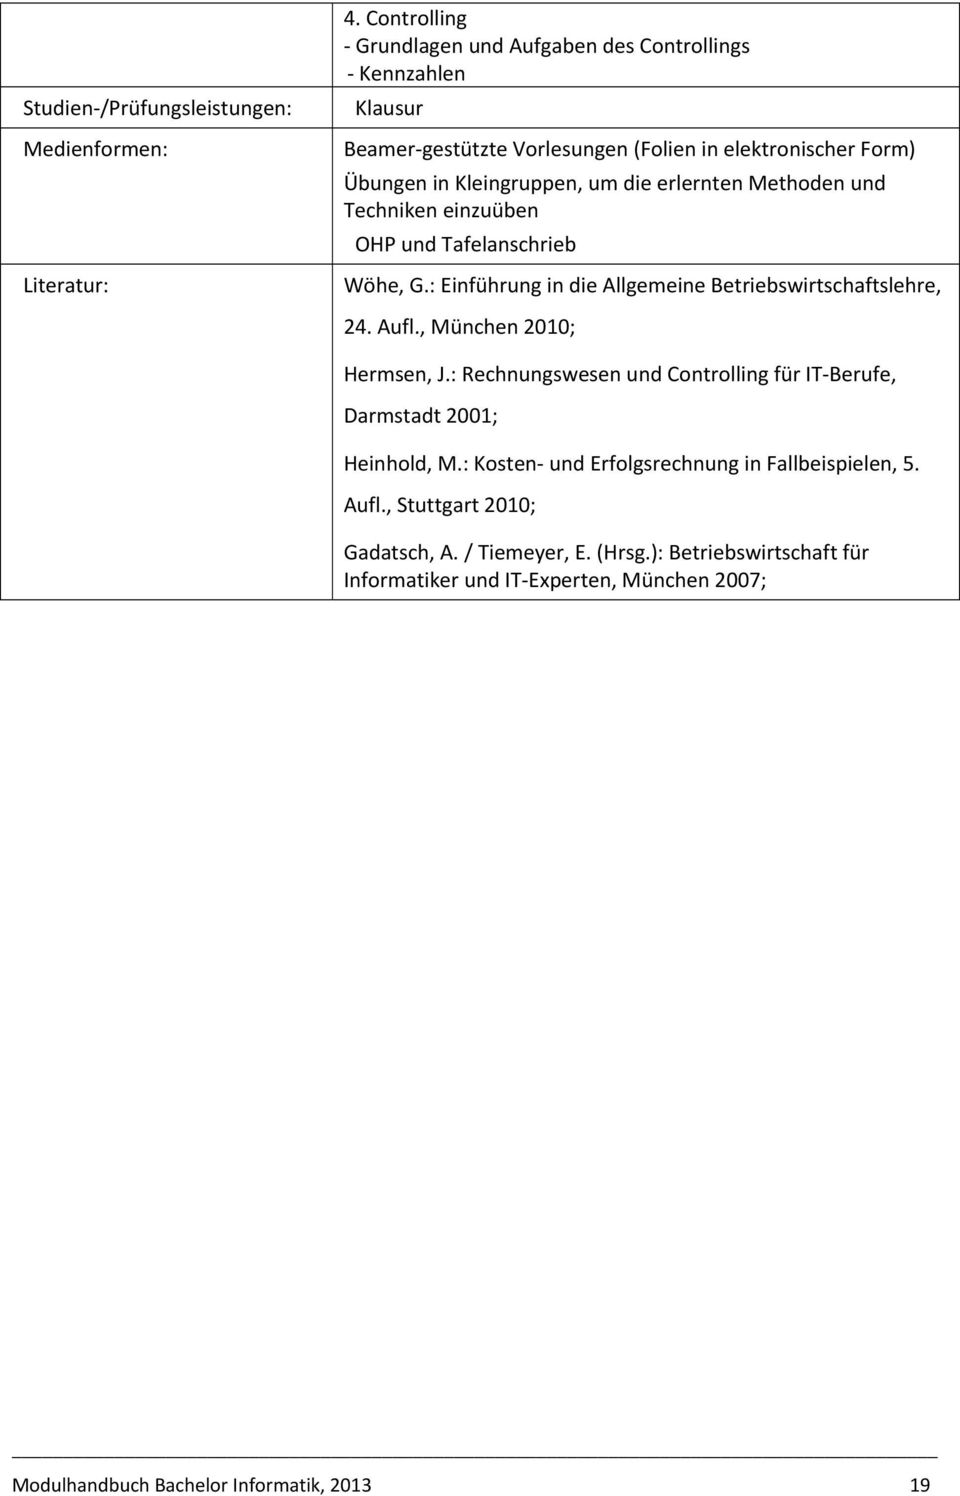 erlernten Methoden und Techniken einzuüben OHP und Tafelanschrieb Wöhe, G.: Einführung in die Allgemeine Betriebswirtschaftslehre, 24. Aufl., München 2010; Hermsen, J.